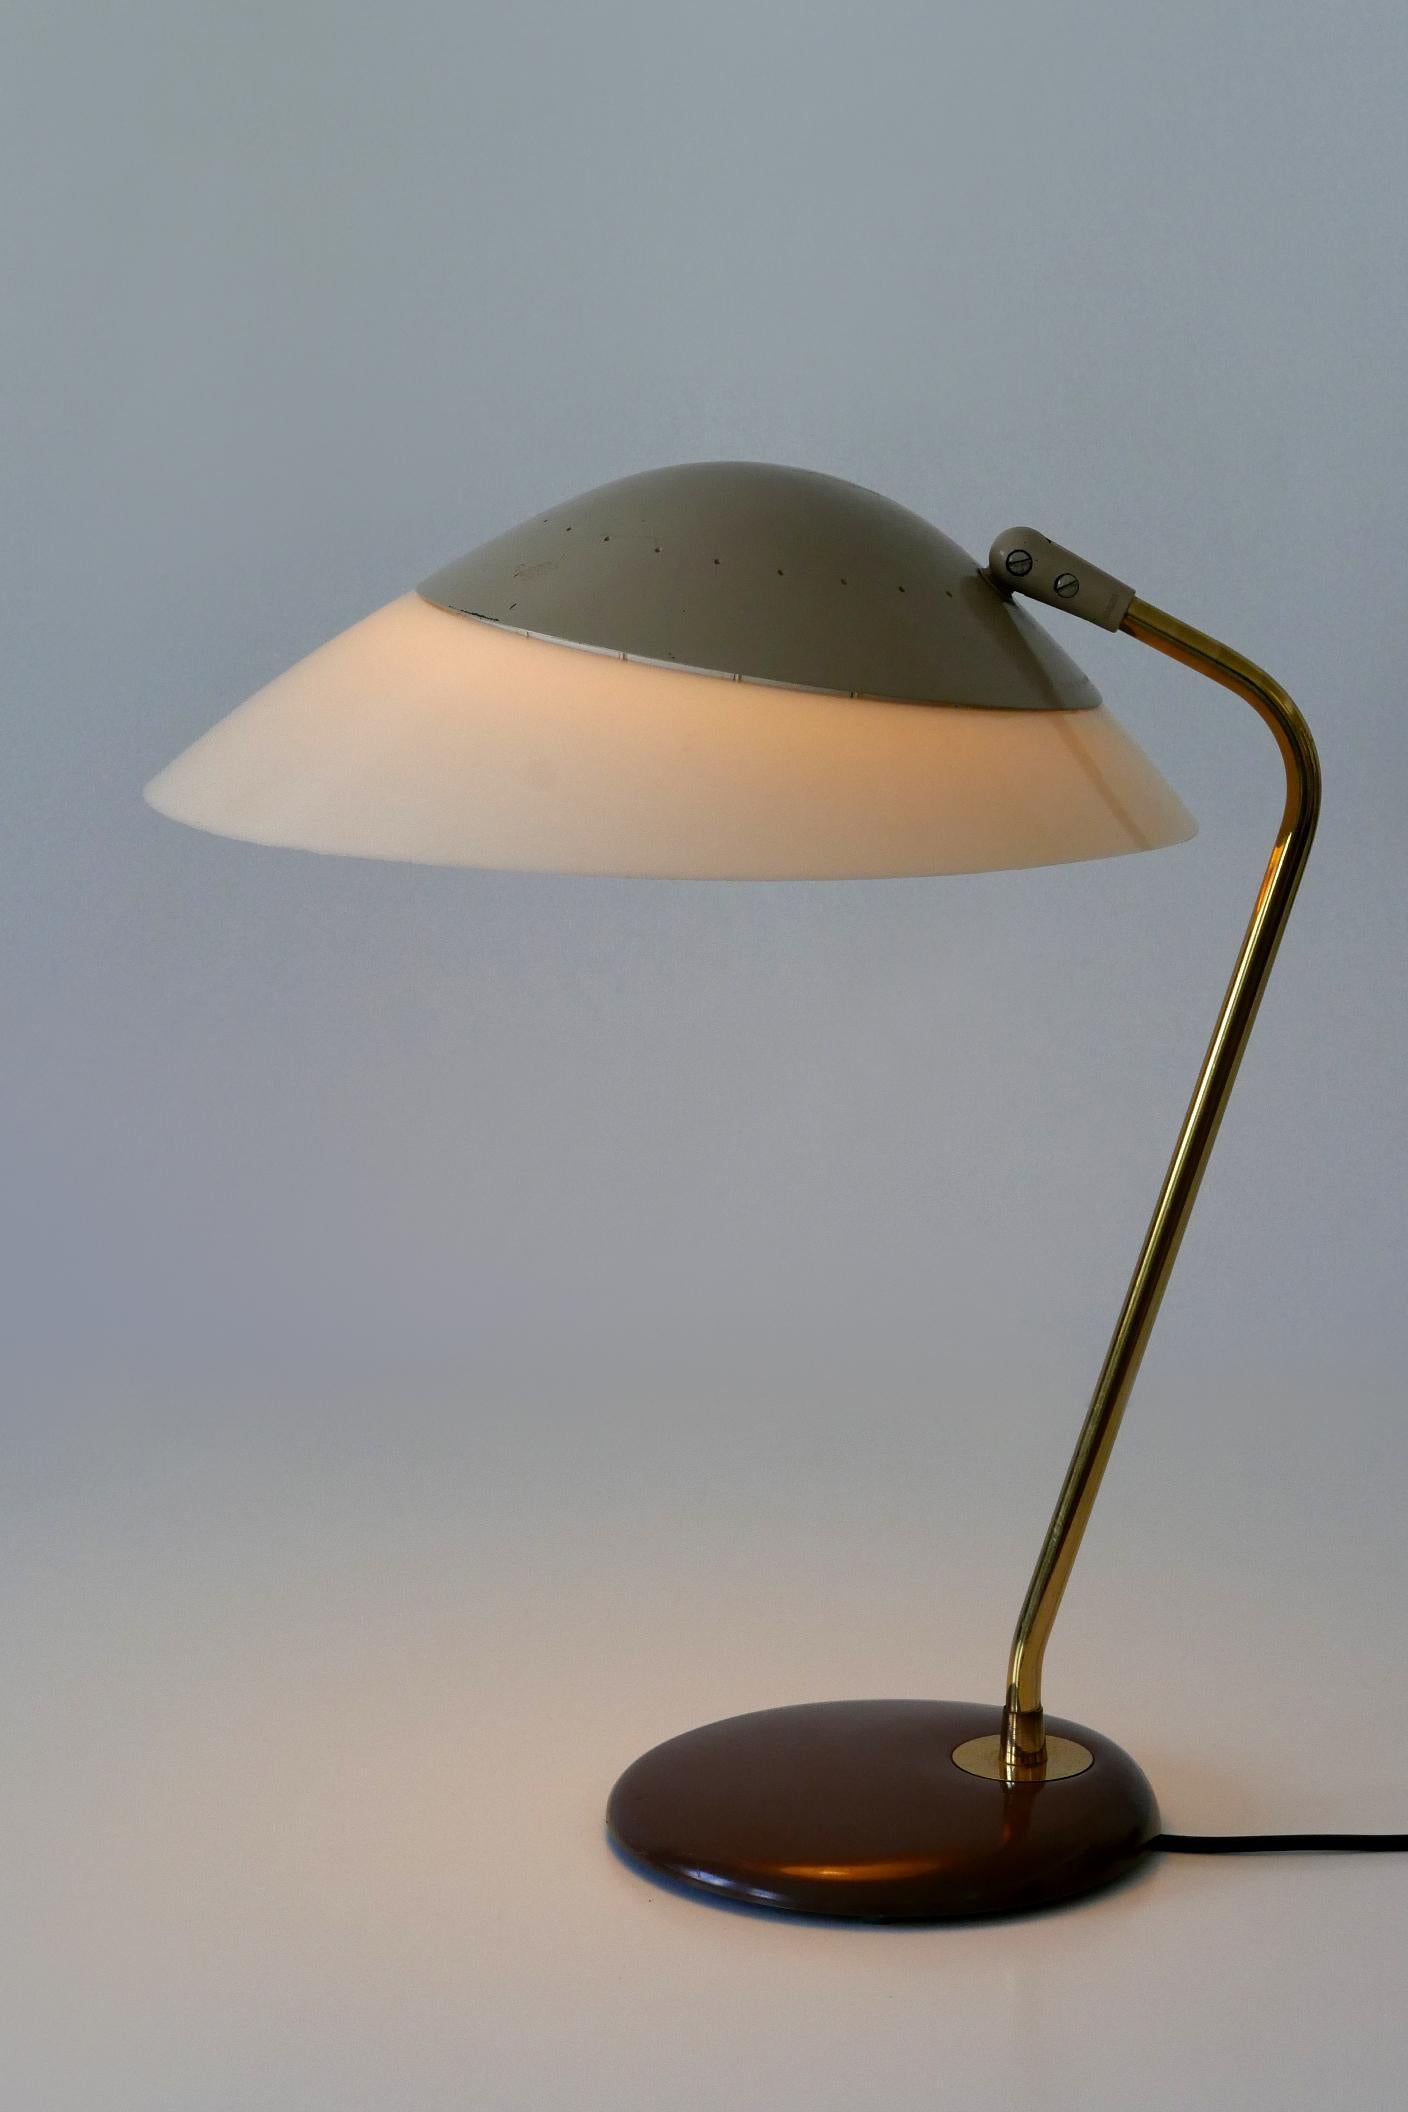 Elegante Mid-Century Modern Tischlampe oder Schreibtischleuchte. Entworfen von Gerald Thurston für Lightolier, USA, 1950er Jahre.

Die aus Messing, Aluminium, Lucite und Metall gefertigte Tischleuchte wird mit 1 x E27 / E26 Edison-Schraubfassung